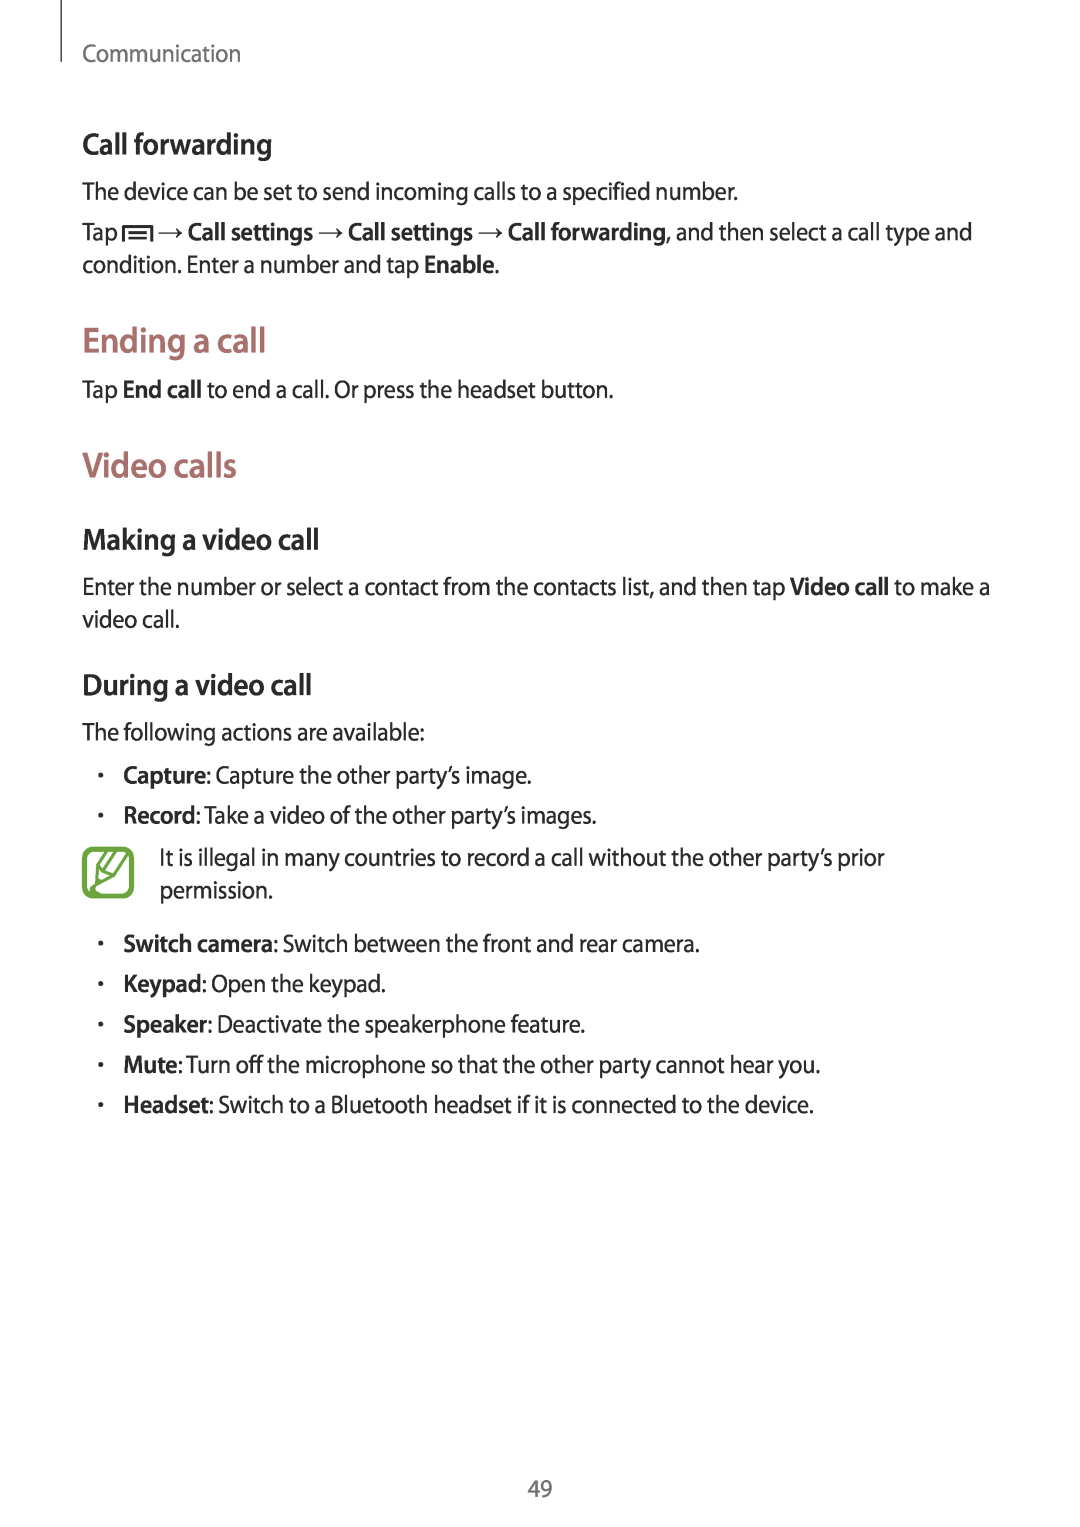 Samsung GT-N5100 Ending a call, Video calls, Call forwarding, Making a video call, During a video call, Communication 